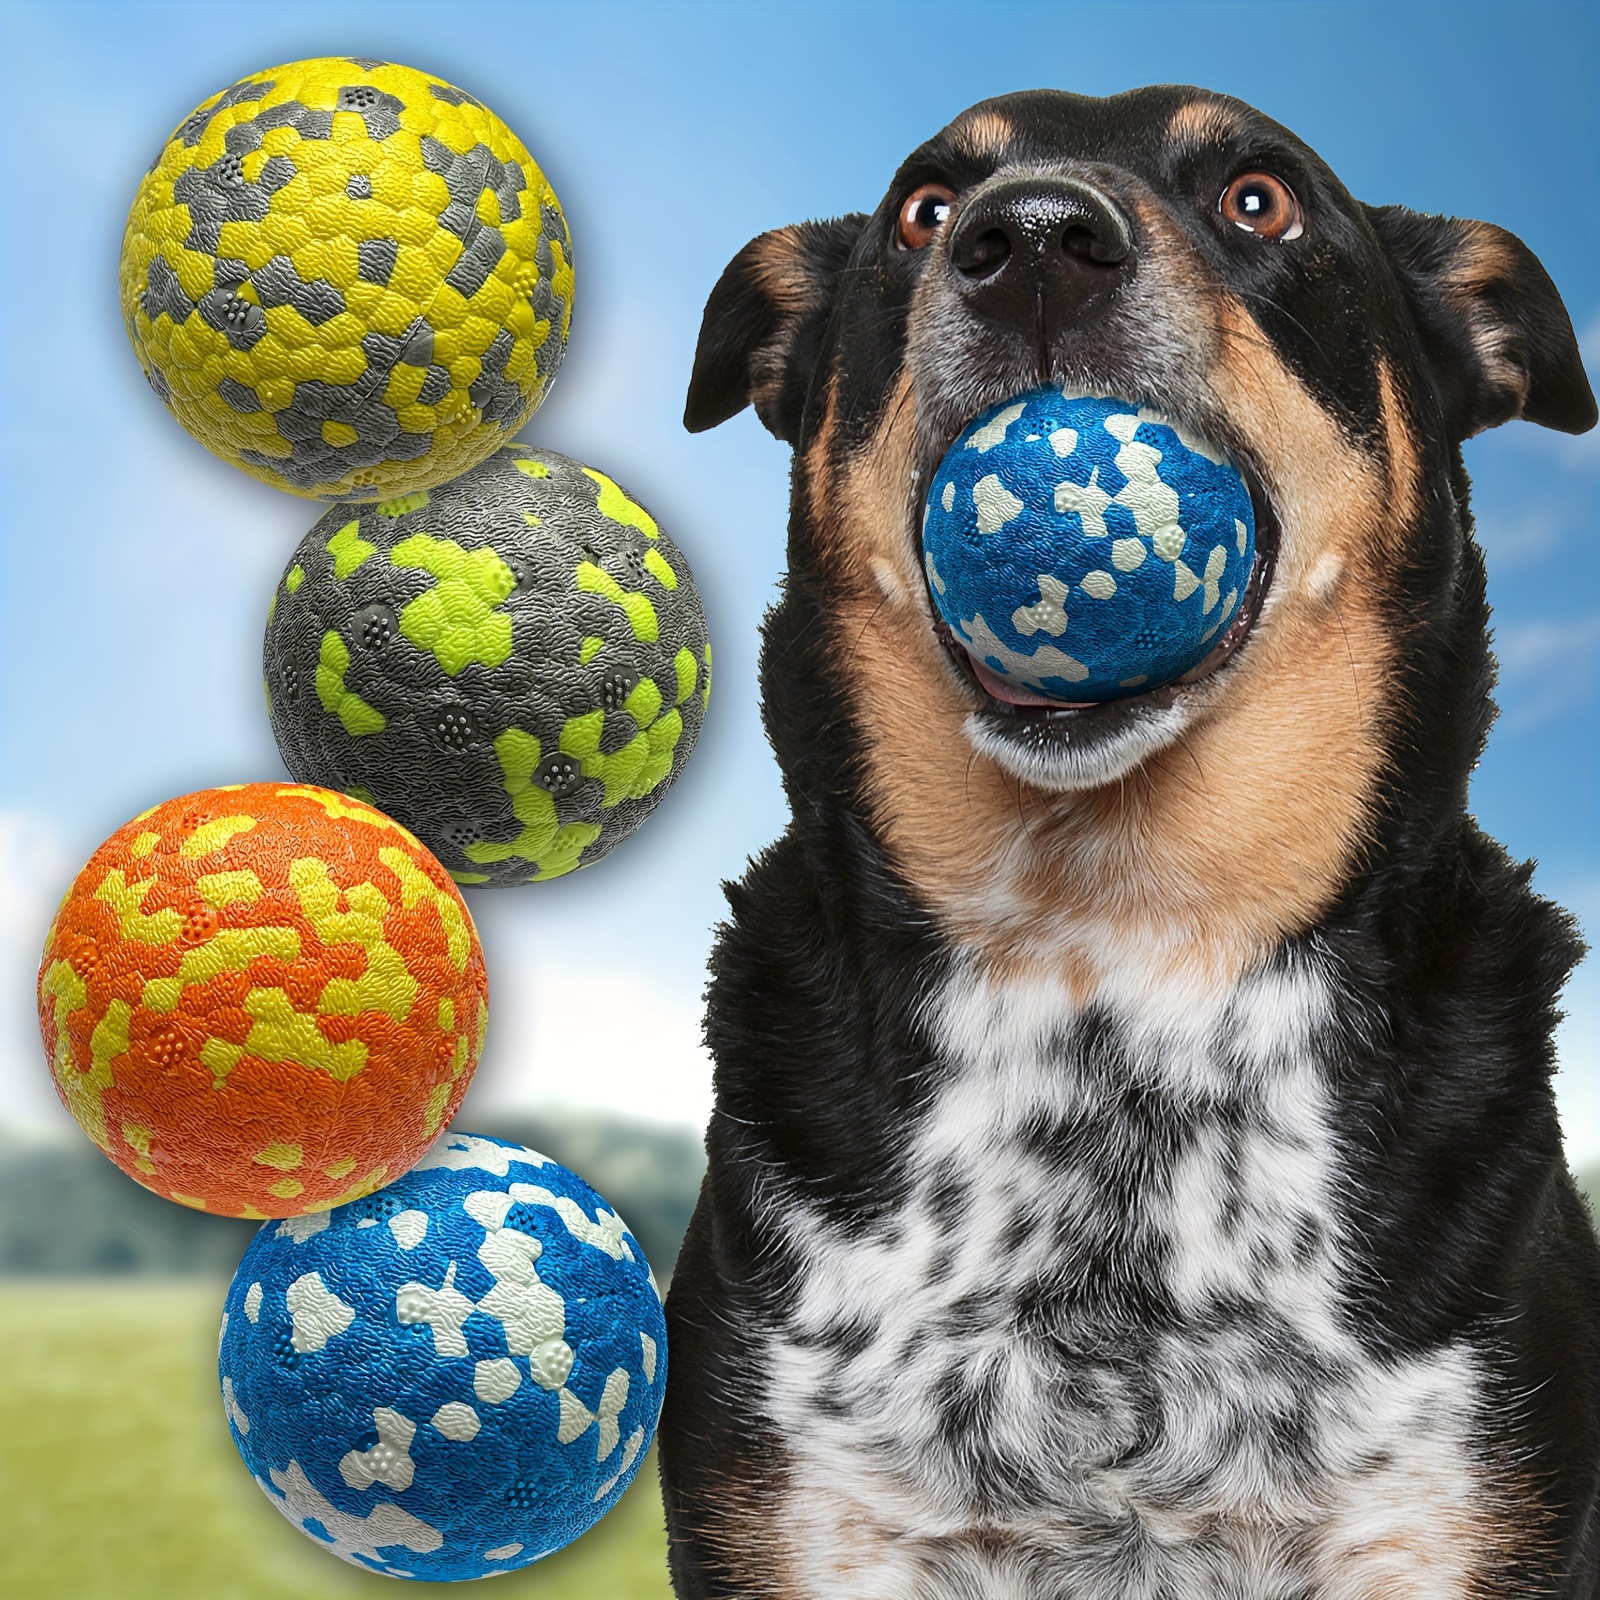 Lanzador automatico de pelotas para perros